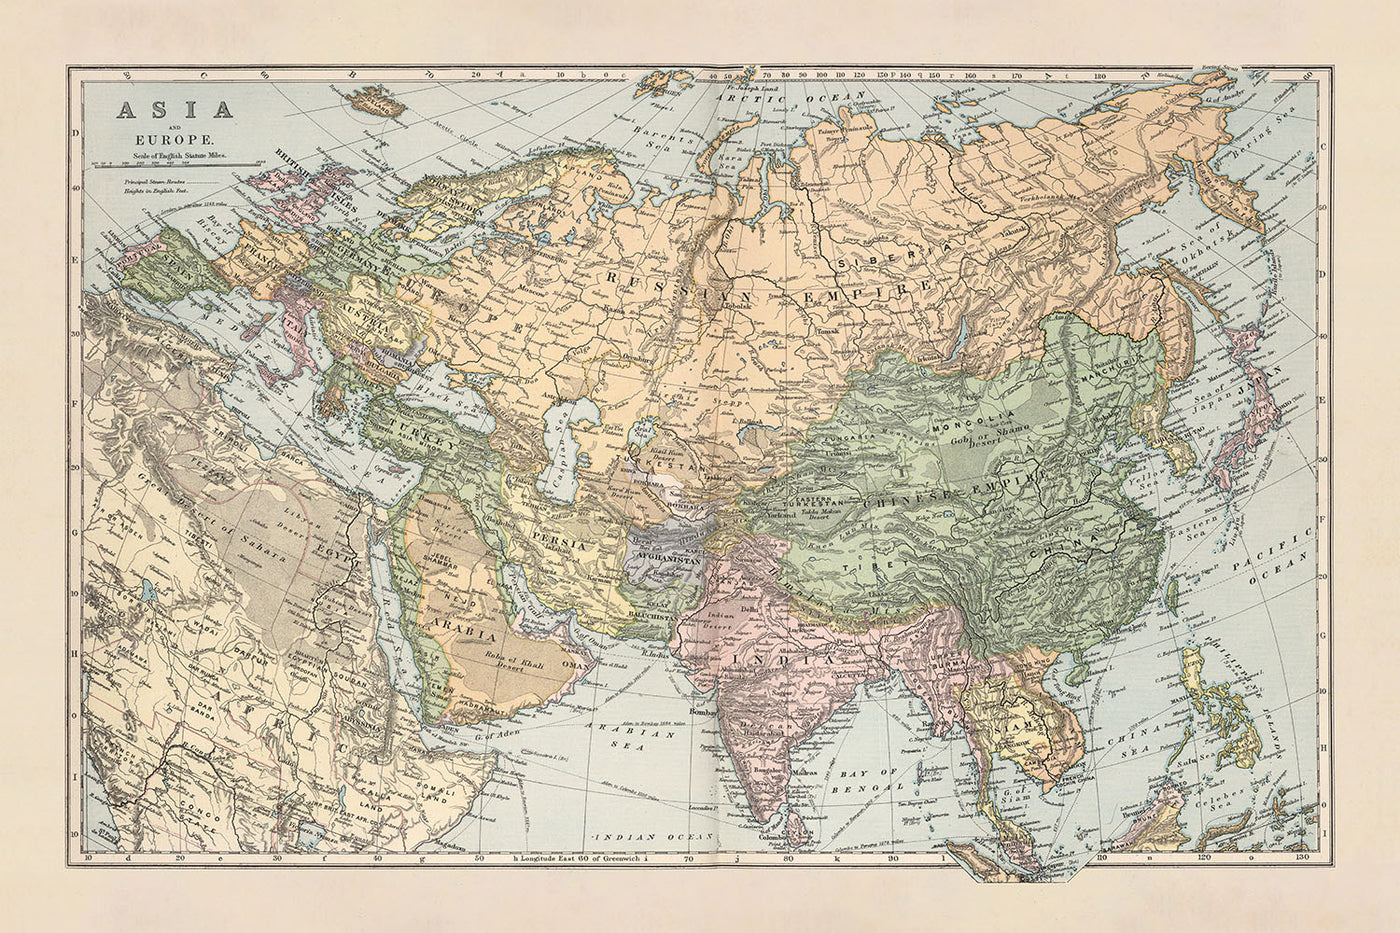 Mapa antiguo de Asia y Europa de Appleton, 1892: divisiones políticas, ciudades principales, rutas de vapor